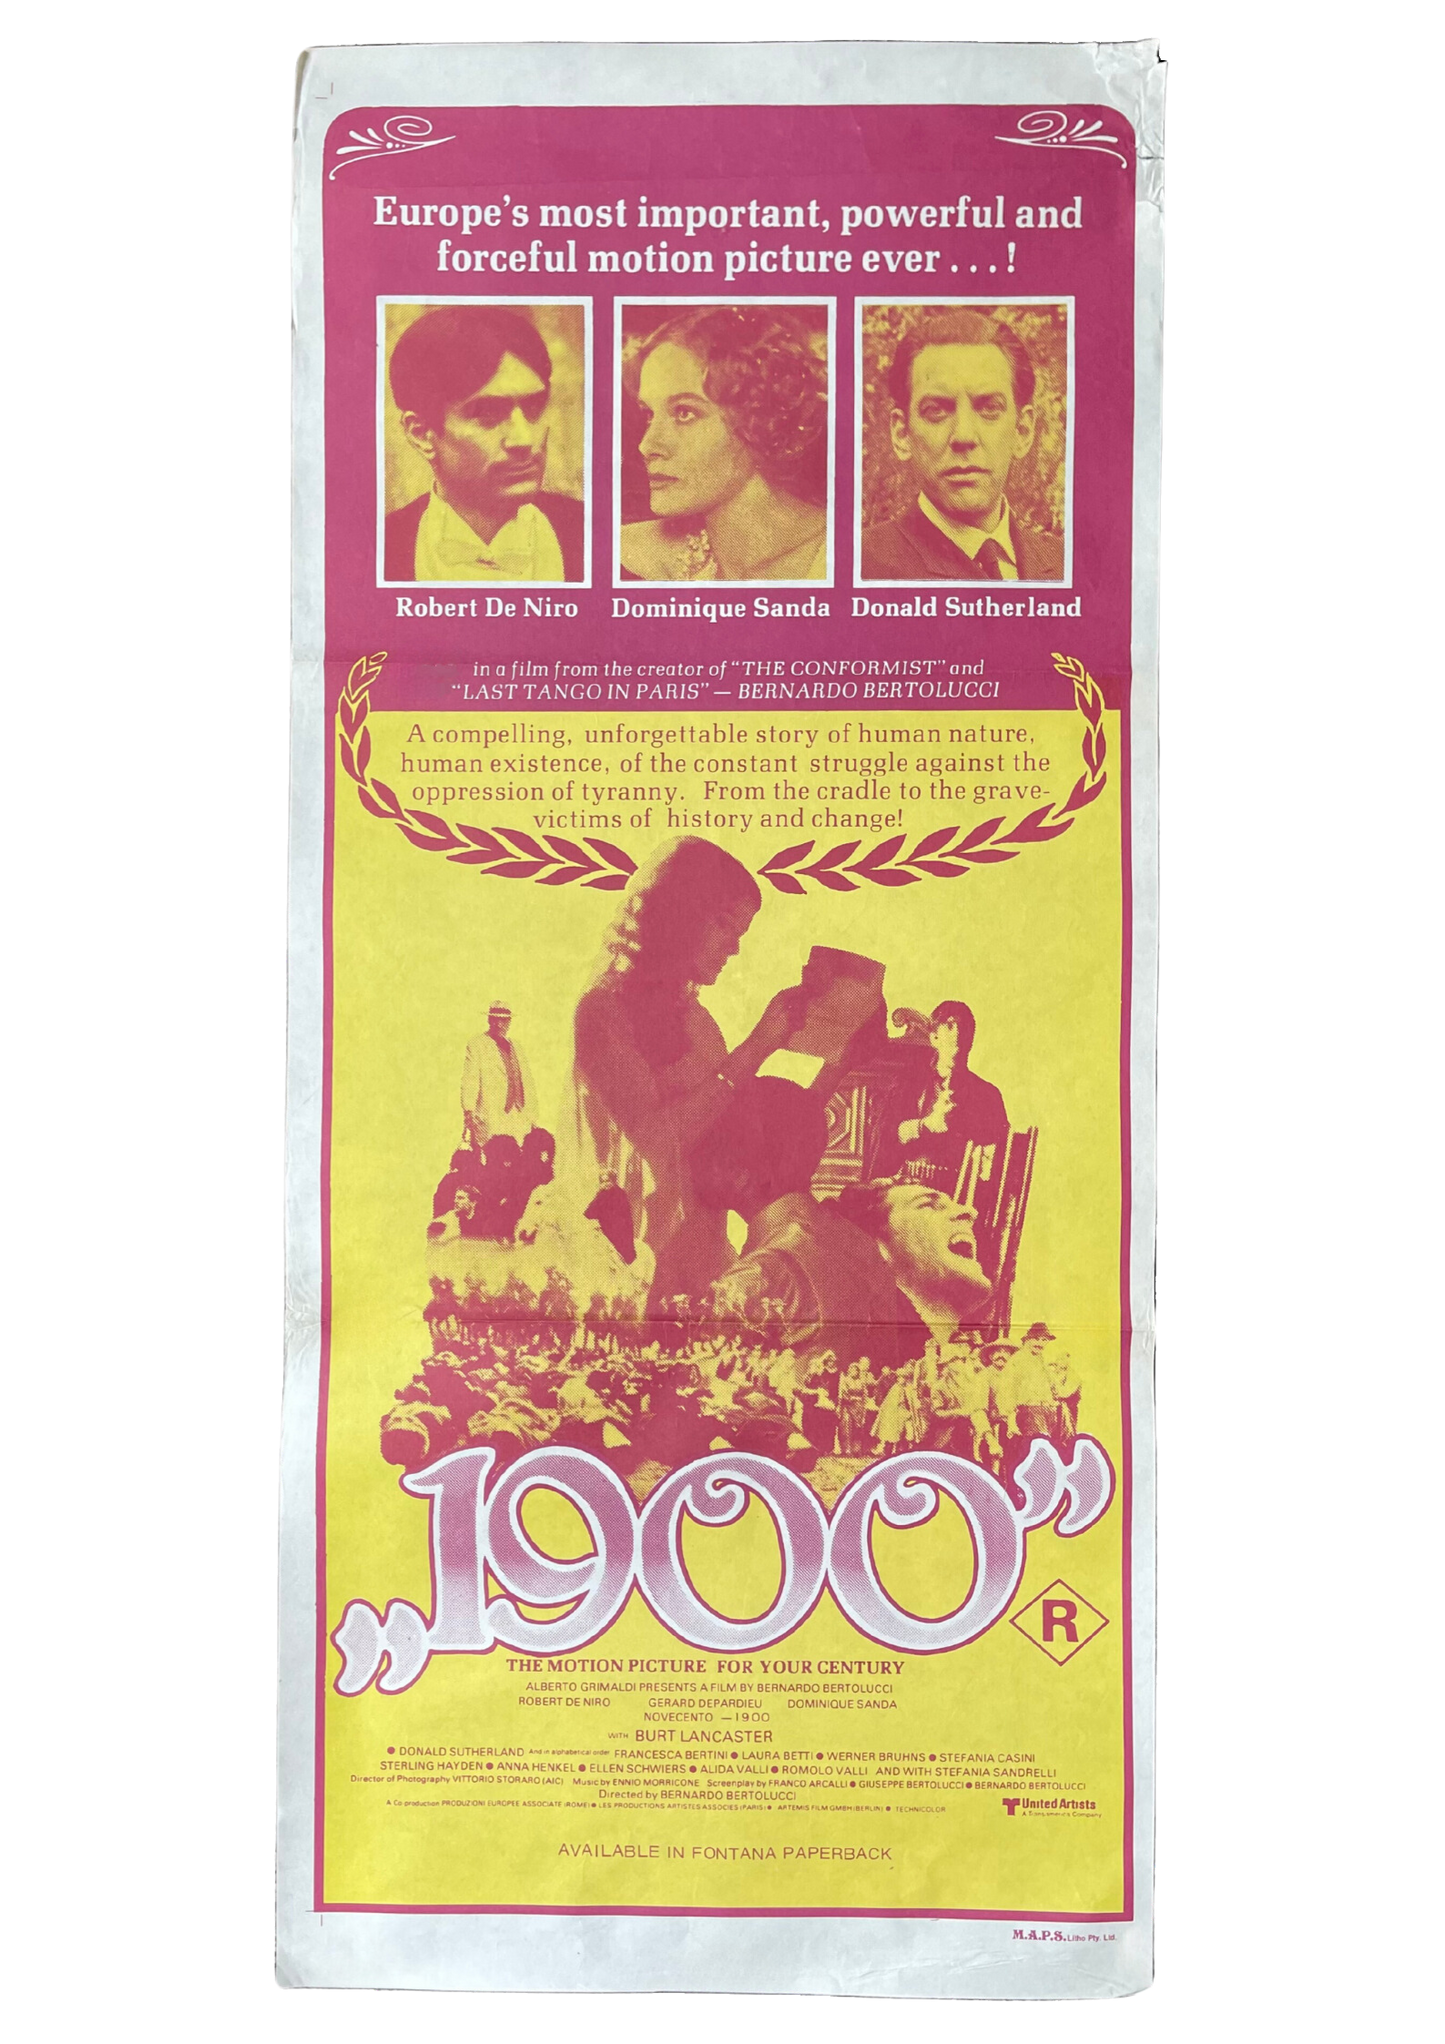 1900 (1976) - Daybill